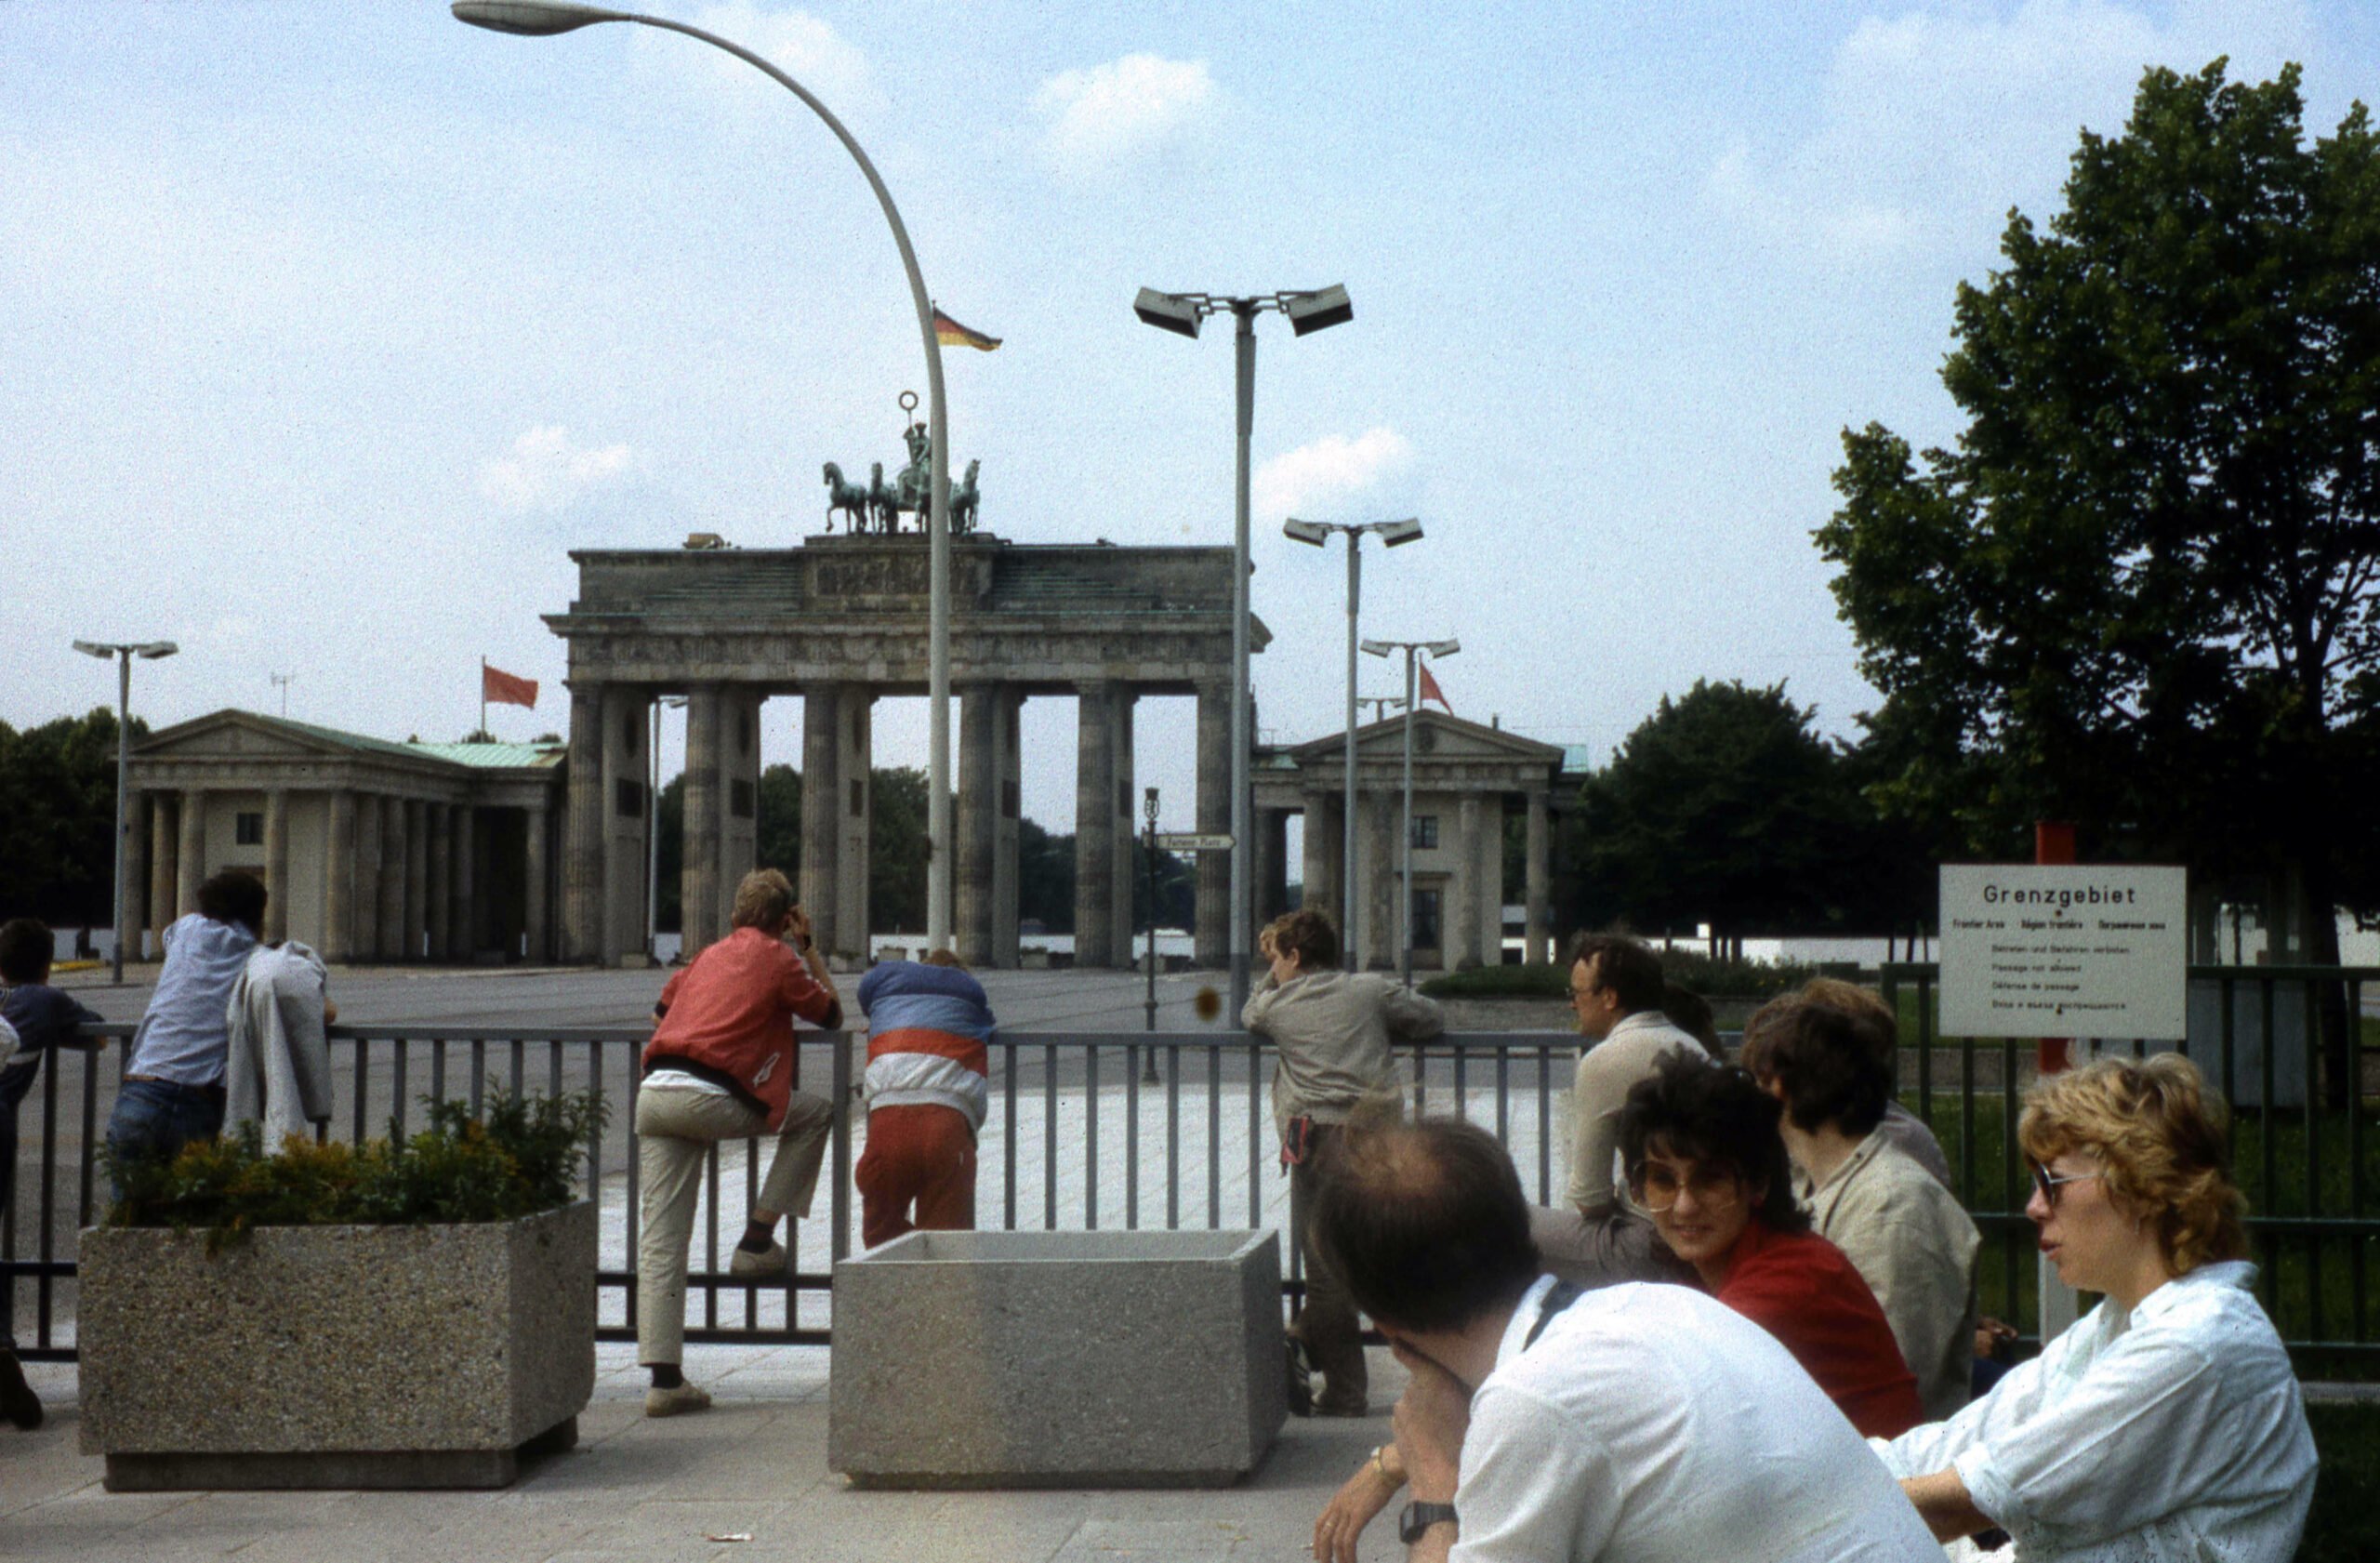 Das weitläufig abgesperrte Brandenburger Tor in Ost-Berlin, 1987. Der Bereich östlich des Brandenburger Tores war Sperrgebiet und durfte nicht betreten werden. Foto: Imago/Snapshot Photography/K. Krause